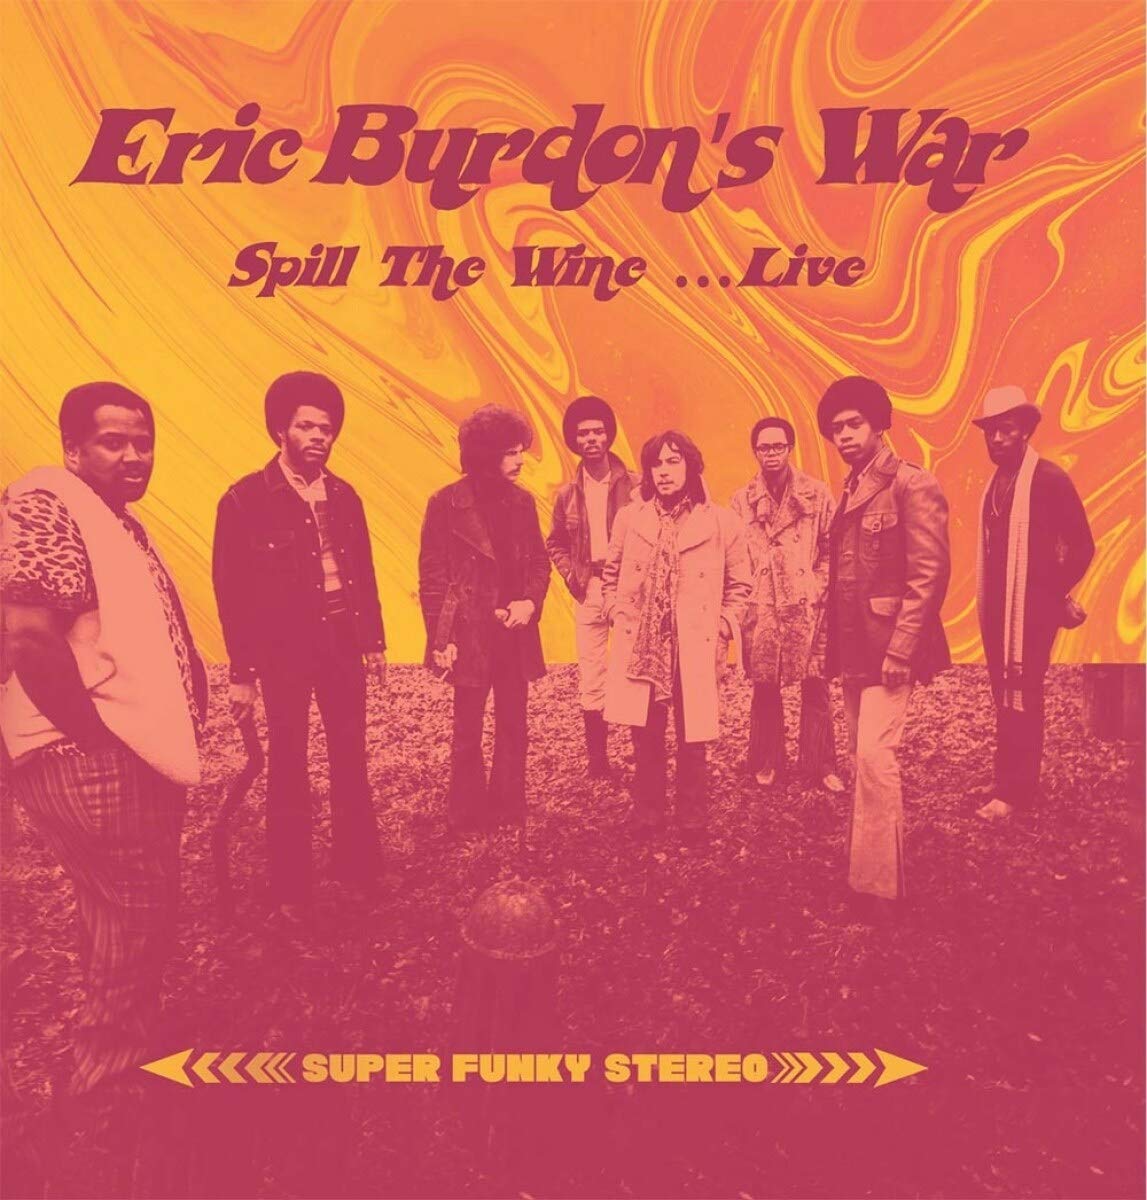 Eric Burdon's War - Spill the Wine ... Live (Vinyl LP)